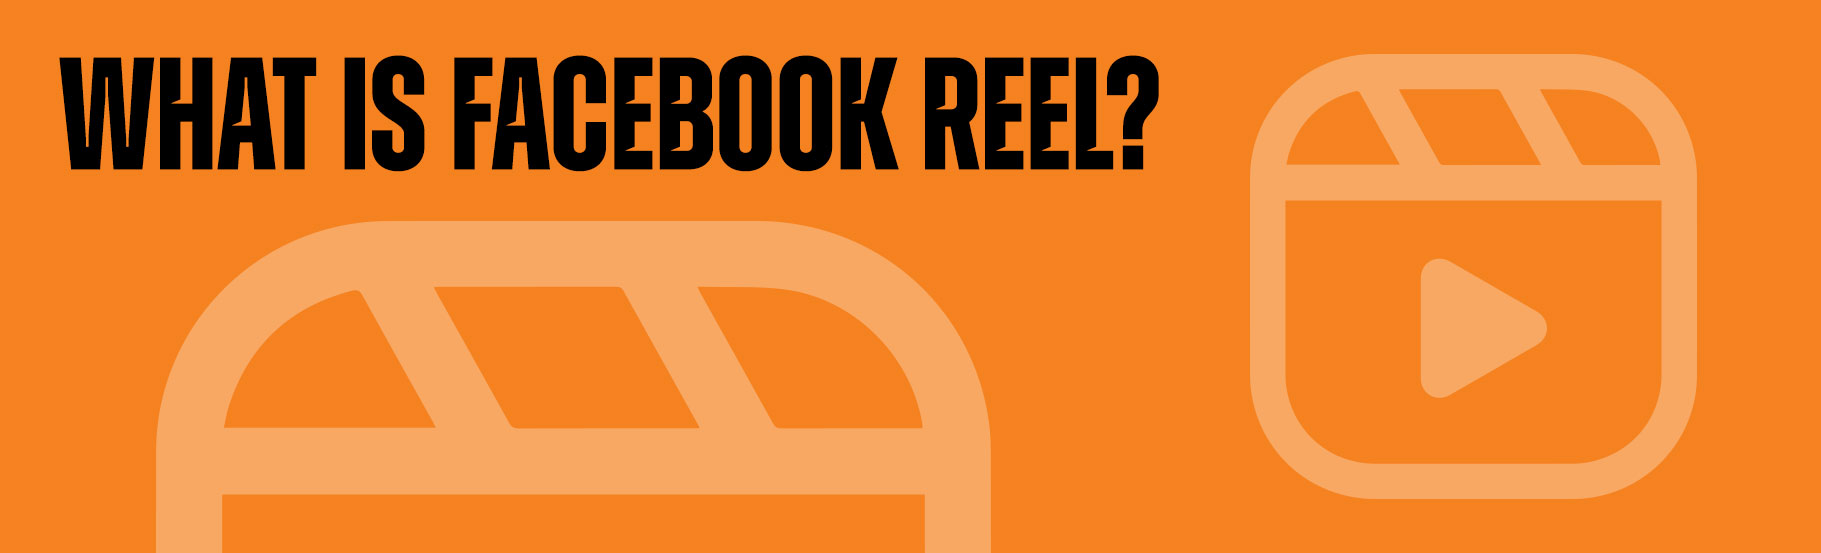 What is Facebook Reel?